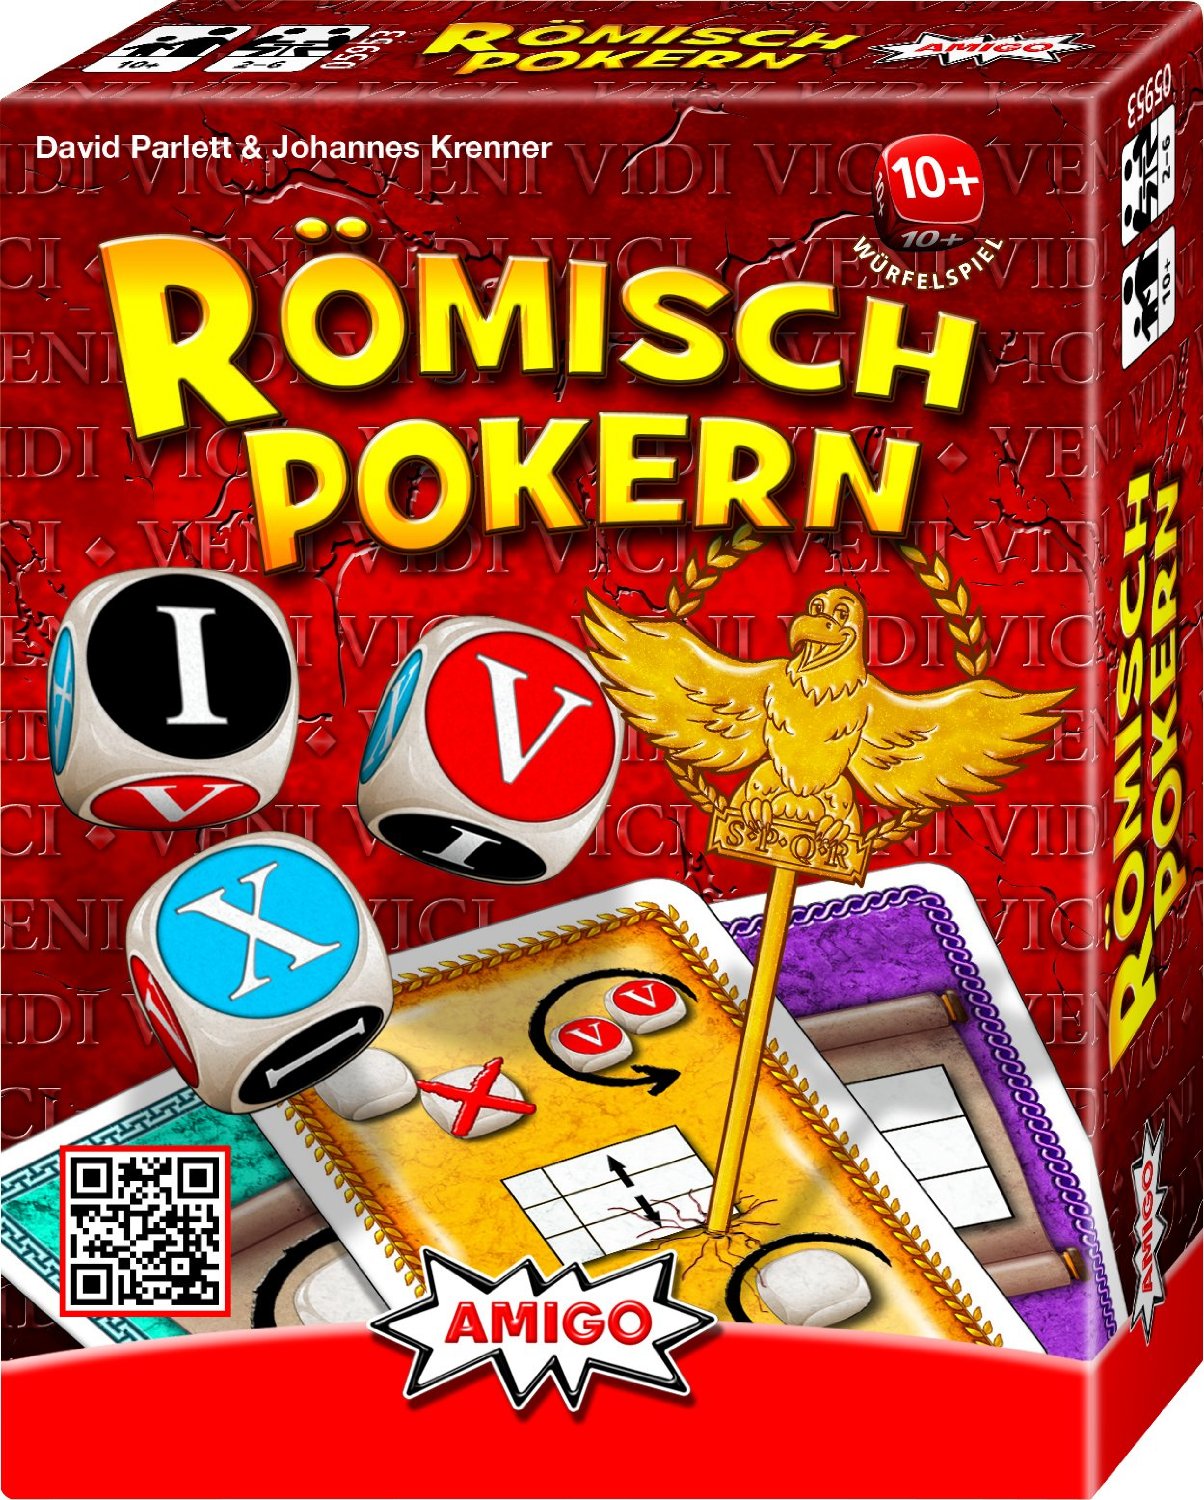 R�misch Pokern - W�rfelspiel, Pokervariante von David Parlett & Johannes Krenner